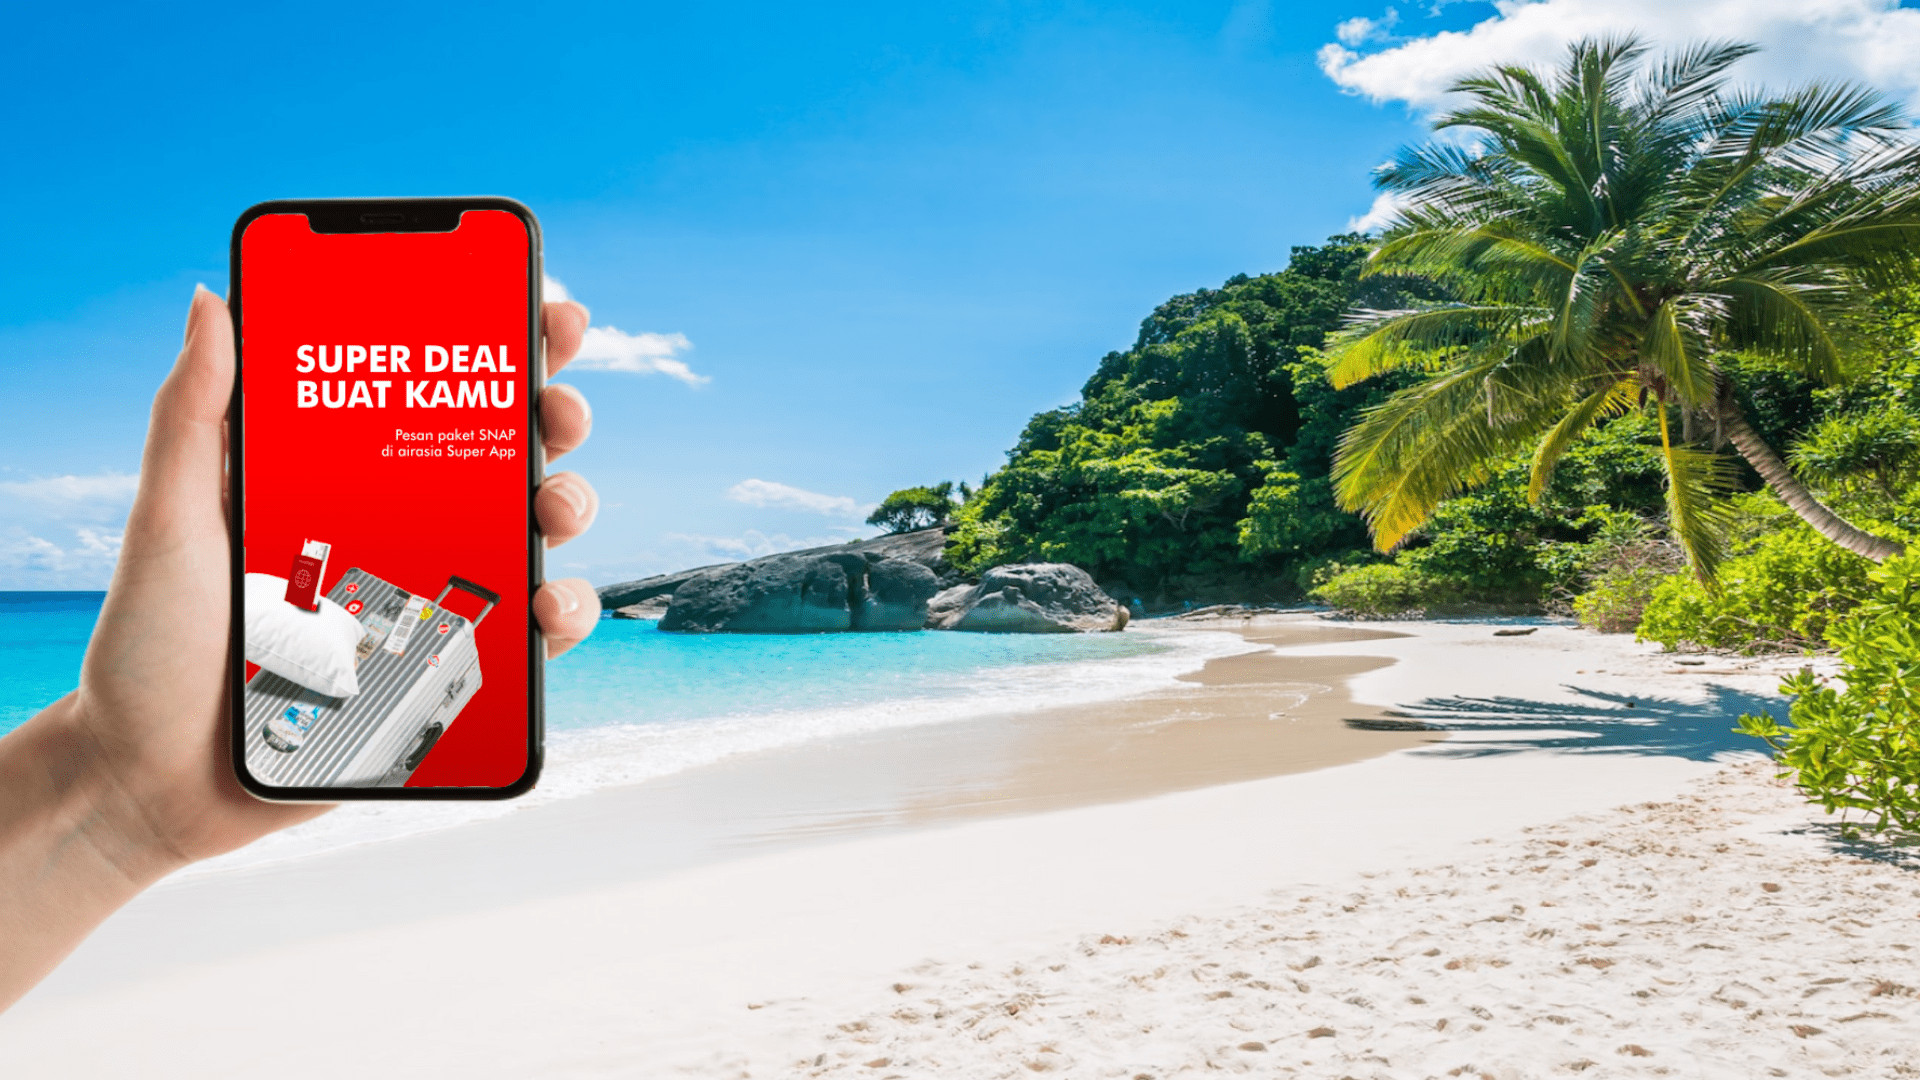 Airasia Super App Sajikan Paket Snap Untuk Liburan Lebih Ekonomis Dan Praktis